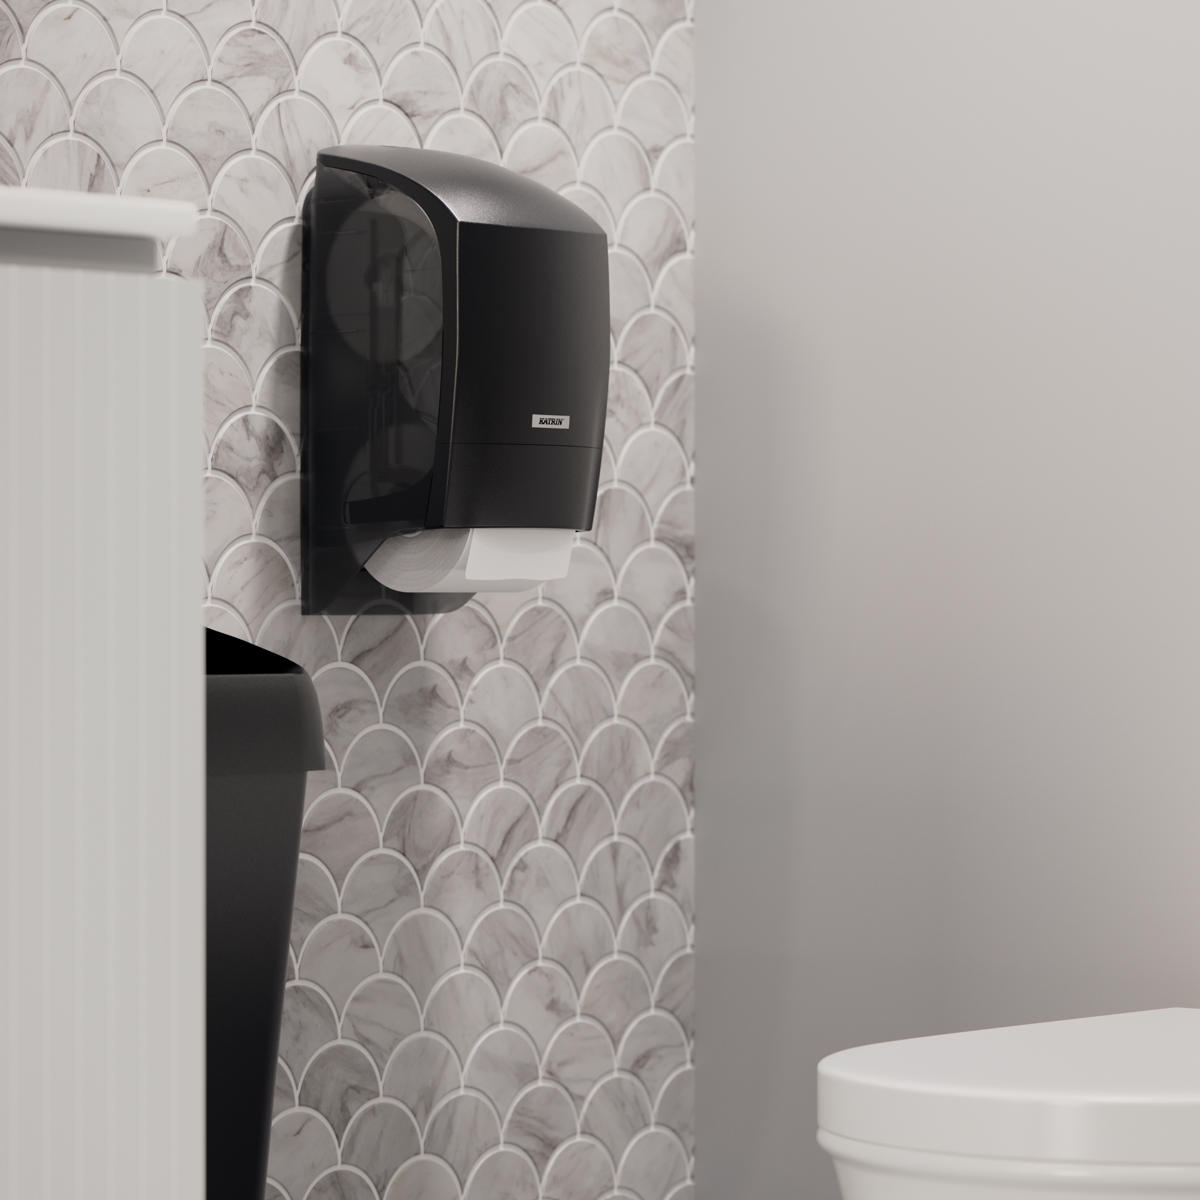 Annostelijassa on tilaa kahdelle WC-paperirullalle. Kun yksi rulla loppuu, toinen rulla tulee automaattisesti sen tilalle.